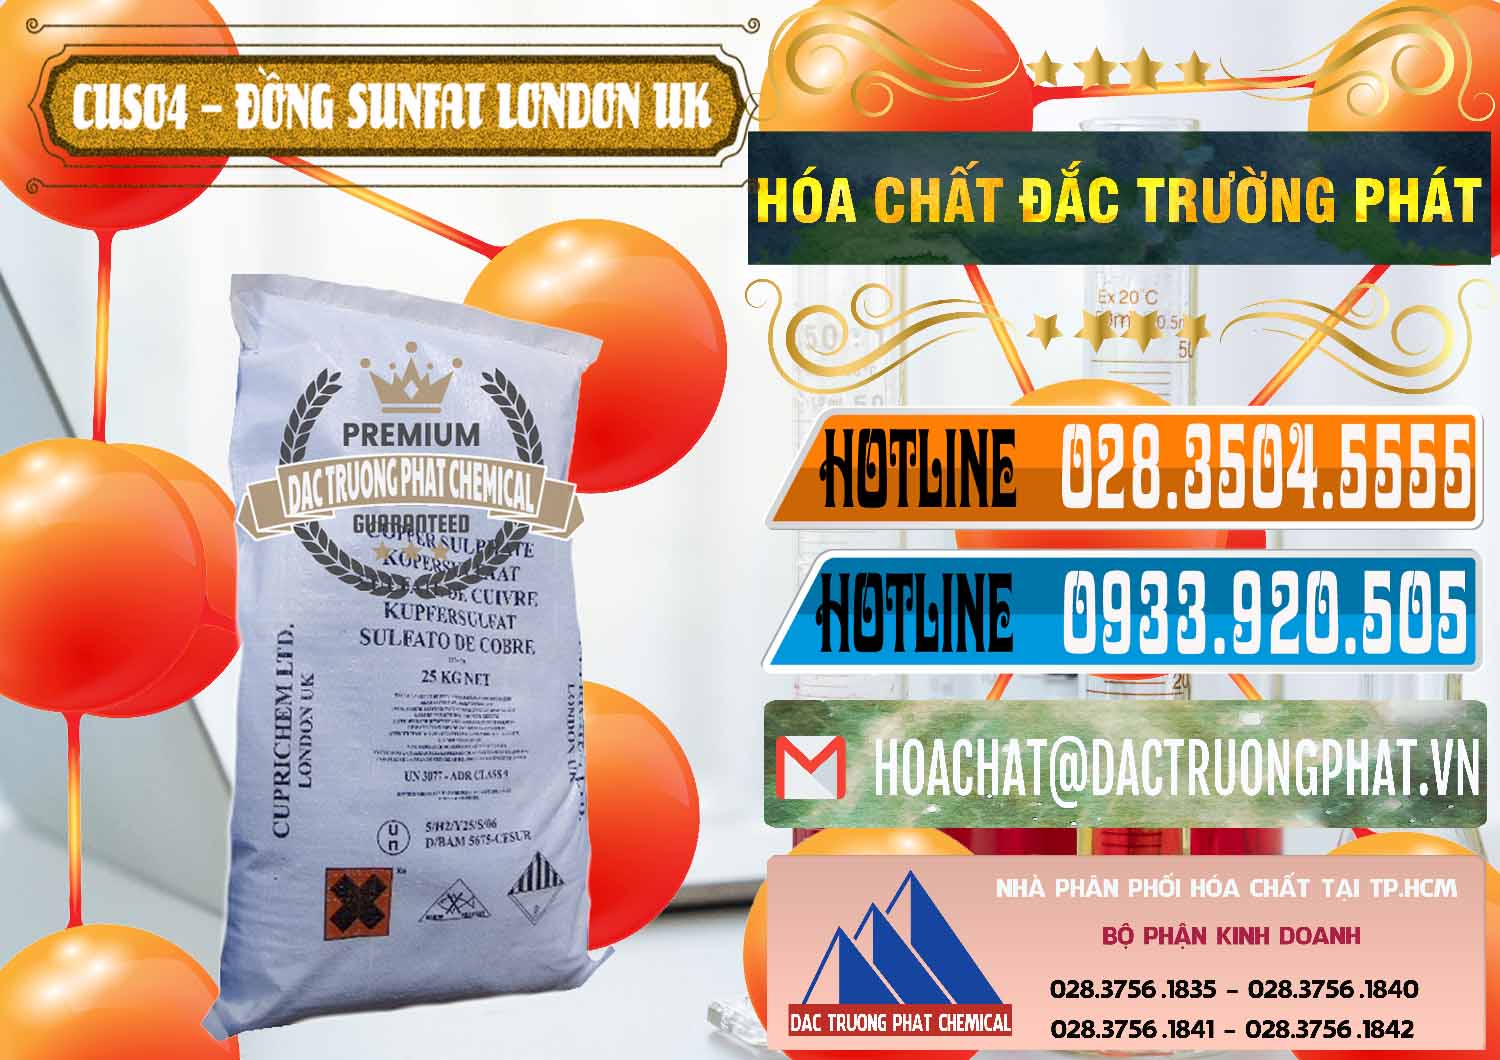 Nơi chuyên bán ( cung ứng ) CuSO4 – Đồng Sunfat Anh Uk Kingdoms - 0478 - Cty cung cấp & phân phối hóa chất tại TP.HCM - stmp.net